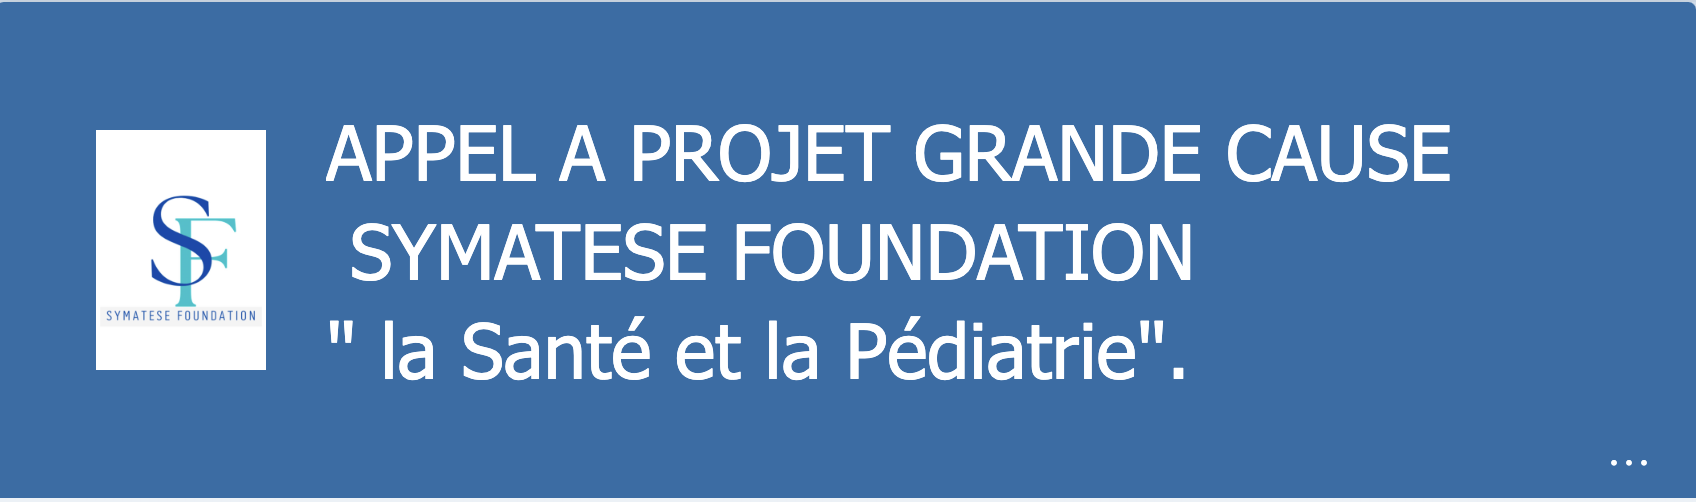 Tout premier Appel à Projet « Santé et pédiatrie »  de notre fonds de dotation Symatese Foundation dont l'objet est de soutenir des projets à but non lucratifs en lien dans le secteur de la santé - Crédit photo : SYMATESE FOUNDATION